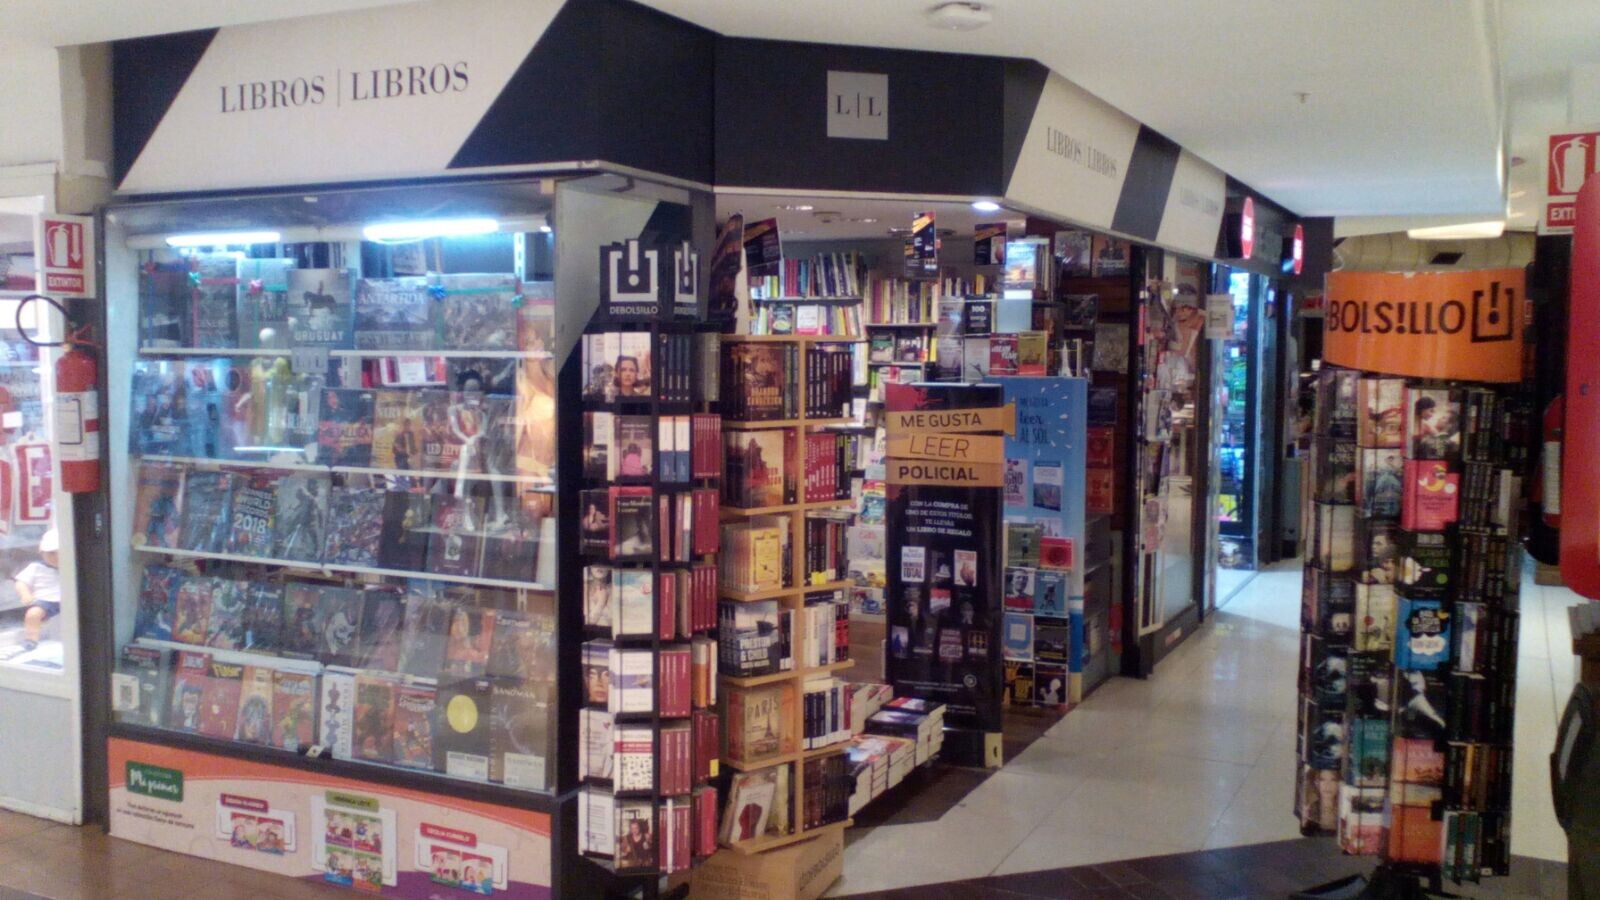 Libros Libros Montevideo Shopping